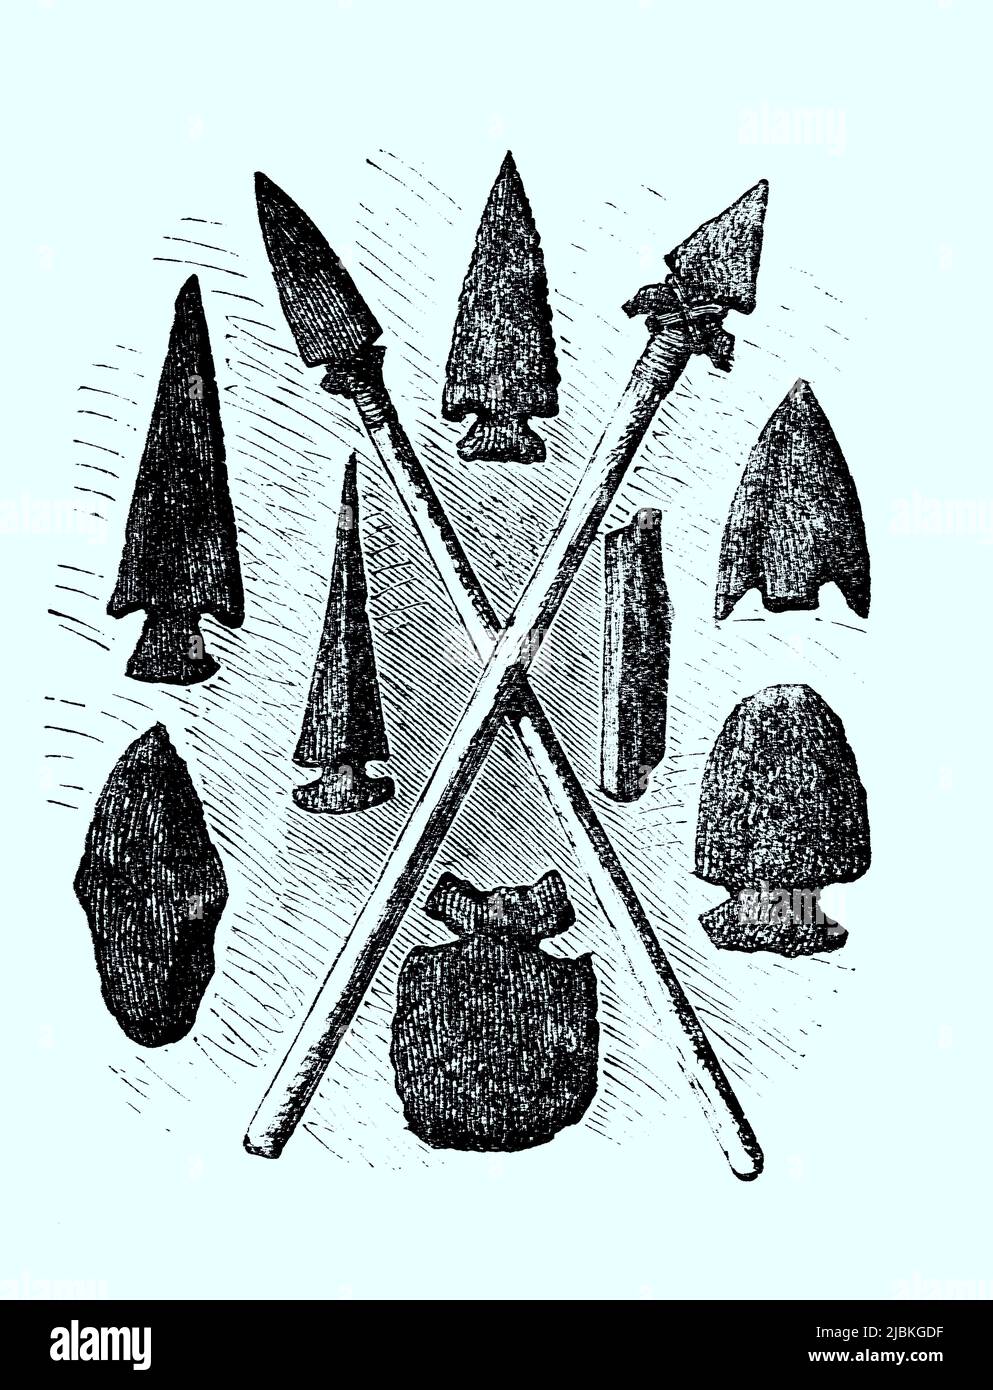 Waffen aus der Steinzeit, restaurierte digitale Reproduktion einer Originalvorlage aus dem 19. Jahrhundert, genaues Originaldatum nicht bekannt Foto Stock